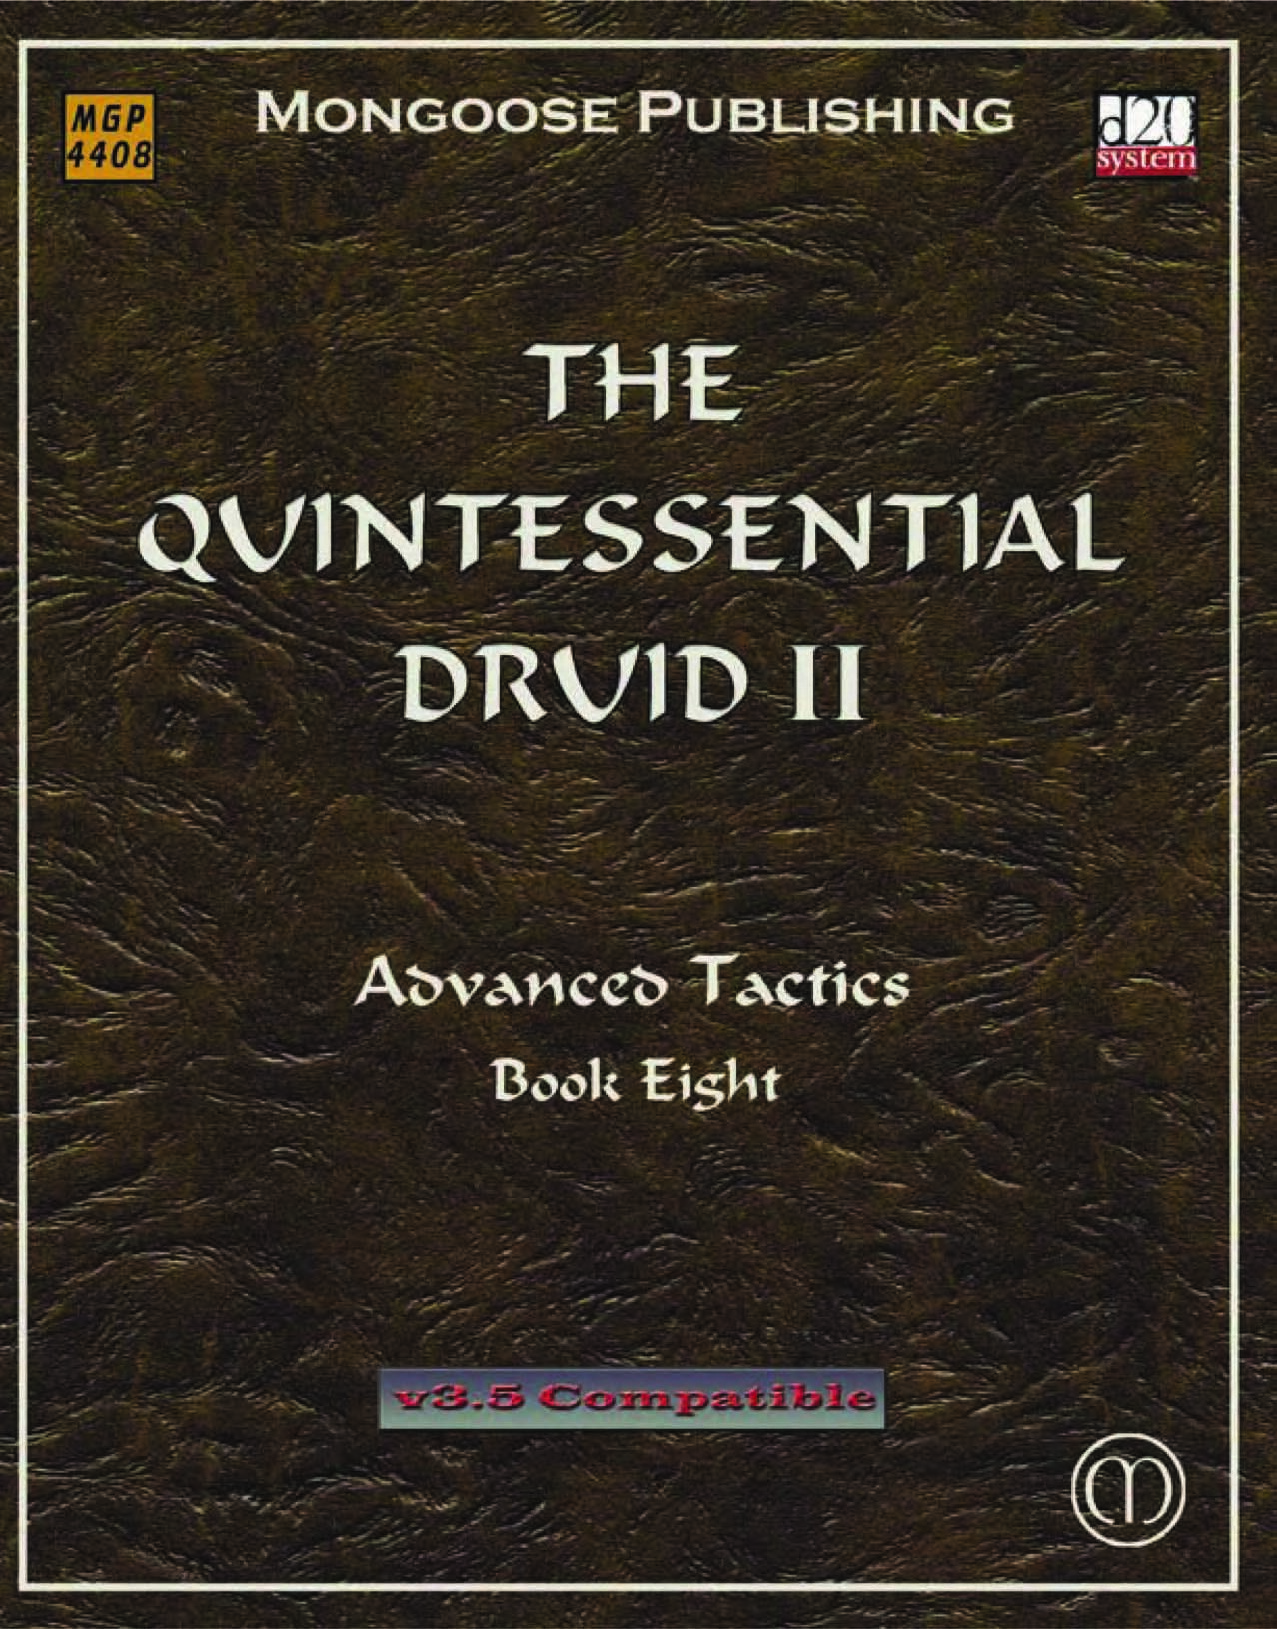 The Quintessential Druid II